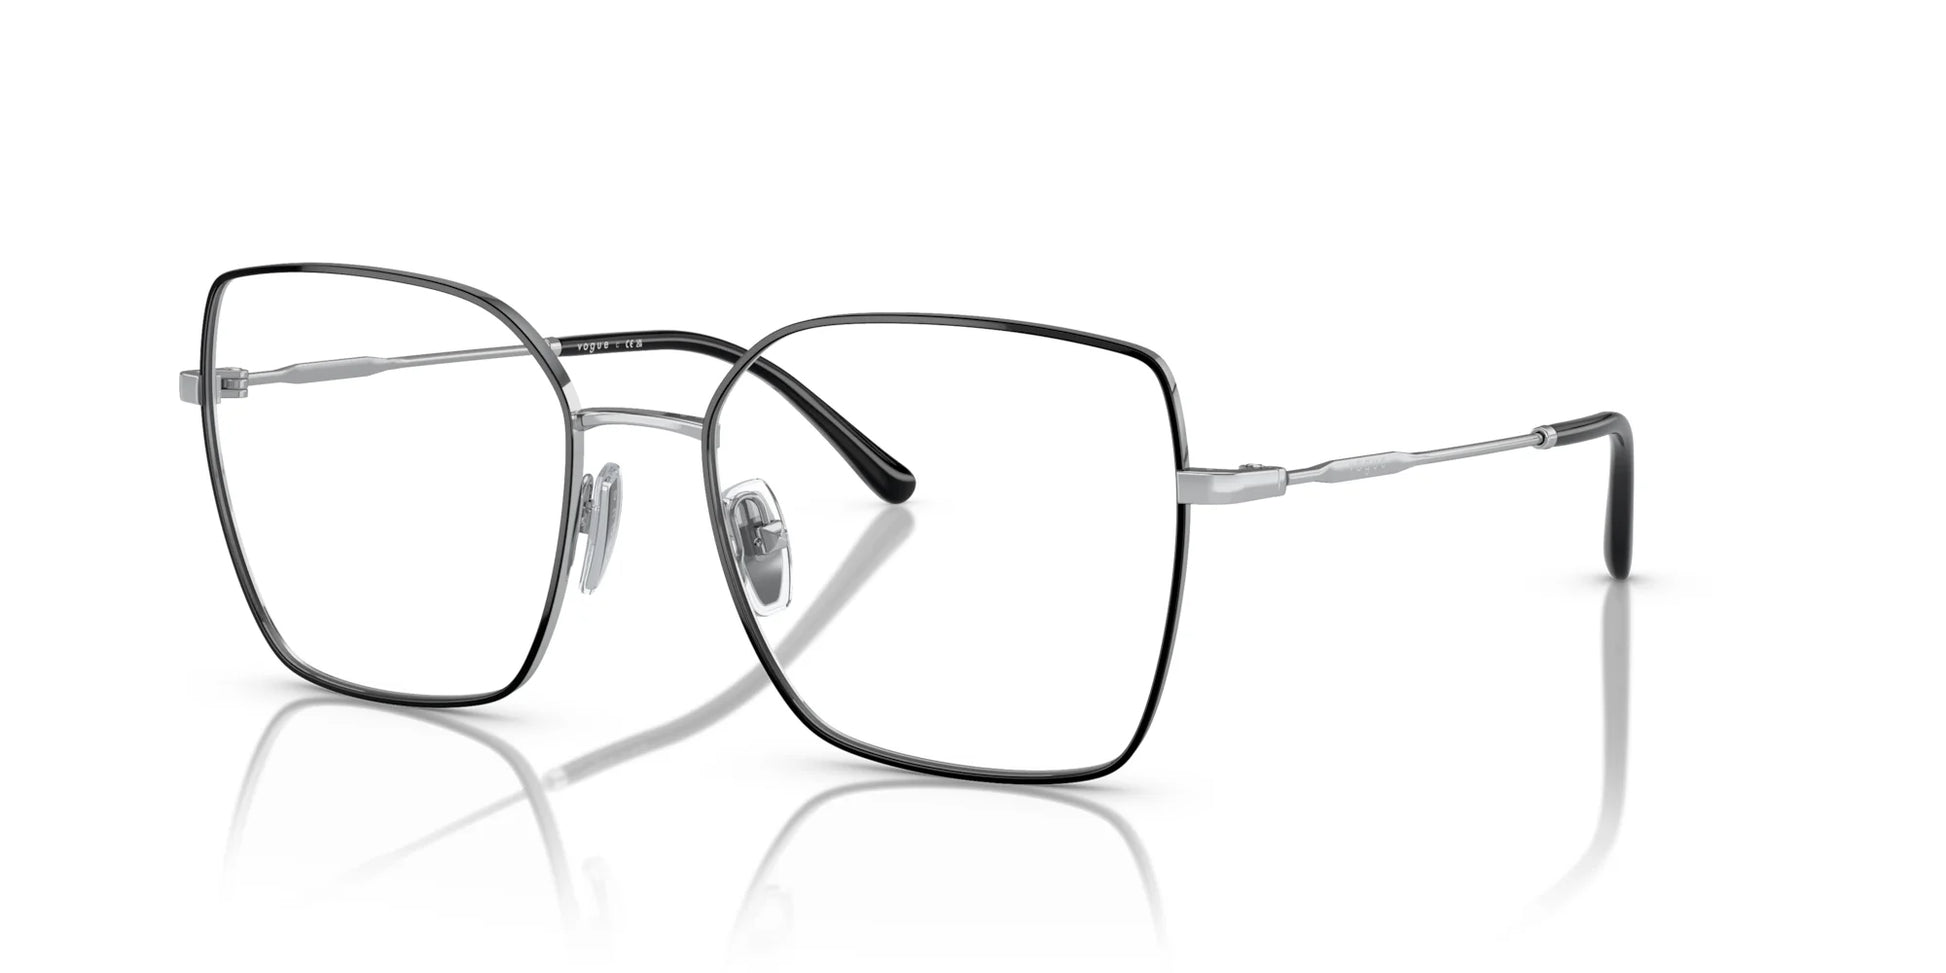 Vogue VO4274 Eyeglasses Top Black / Silver